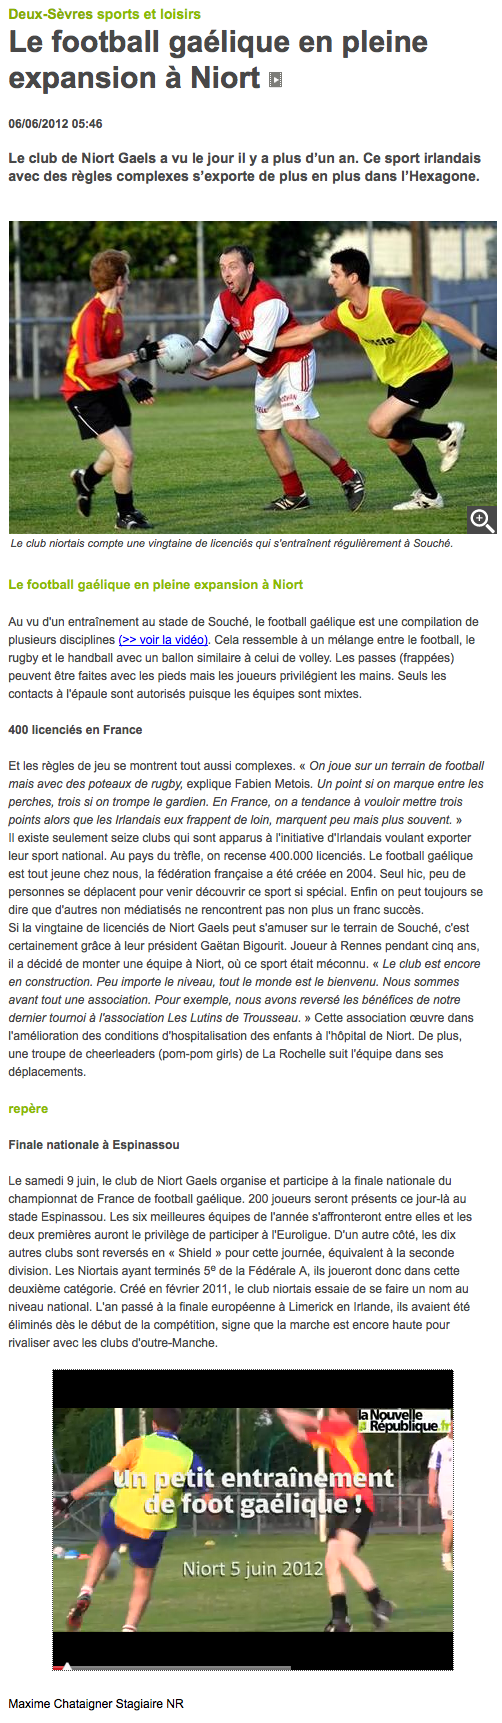 2012-06-06-Le-football-gaelique-en-pleine-expansion-a-Niort-La-Nouvelle-Republique